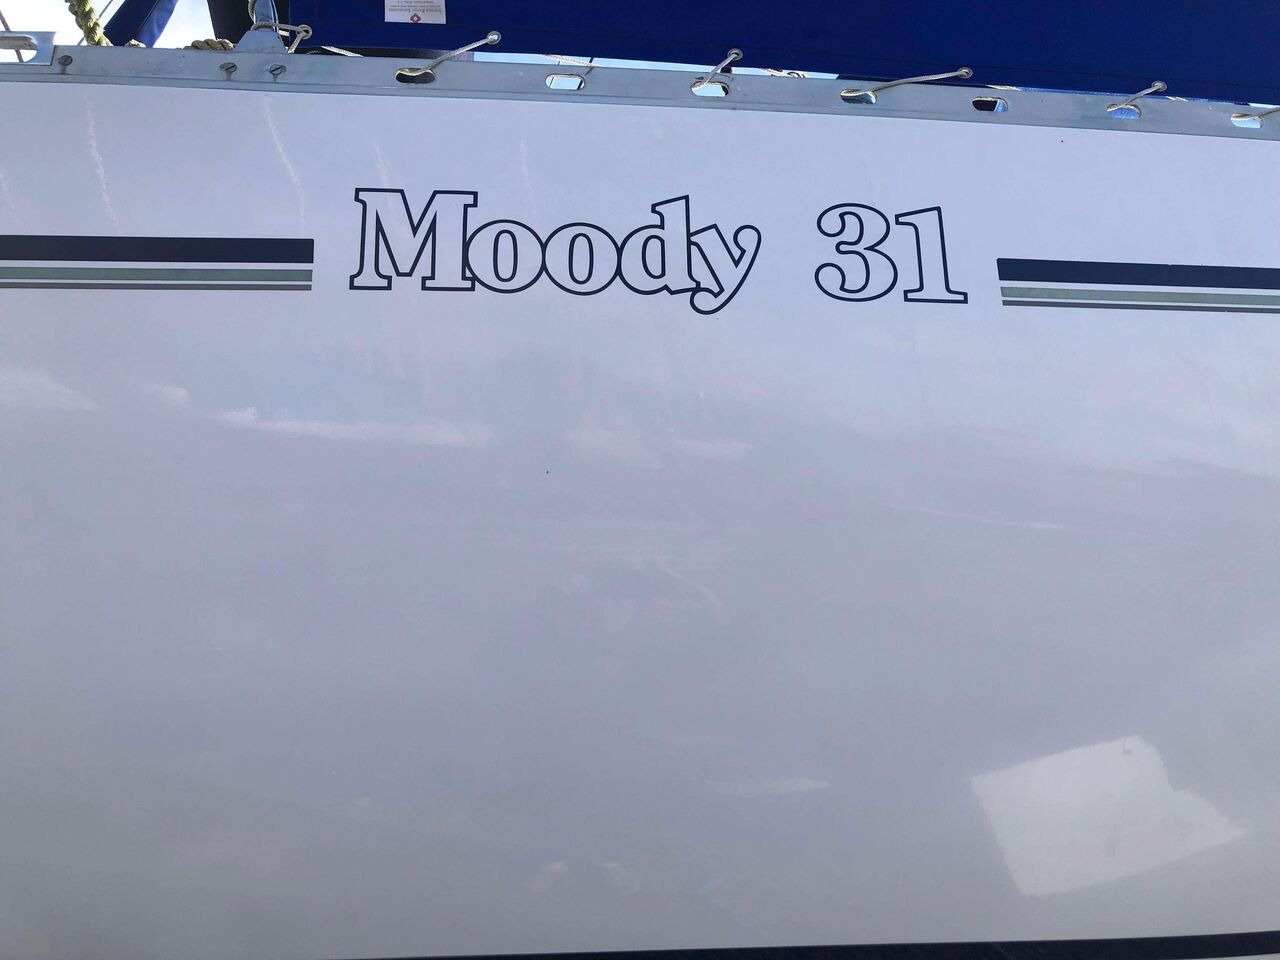 Moody 31 MK II - immagine 2